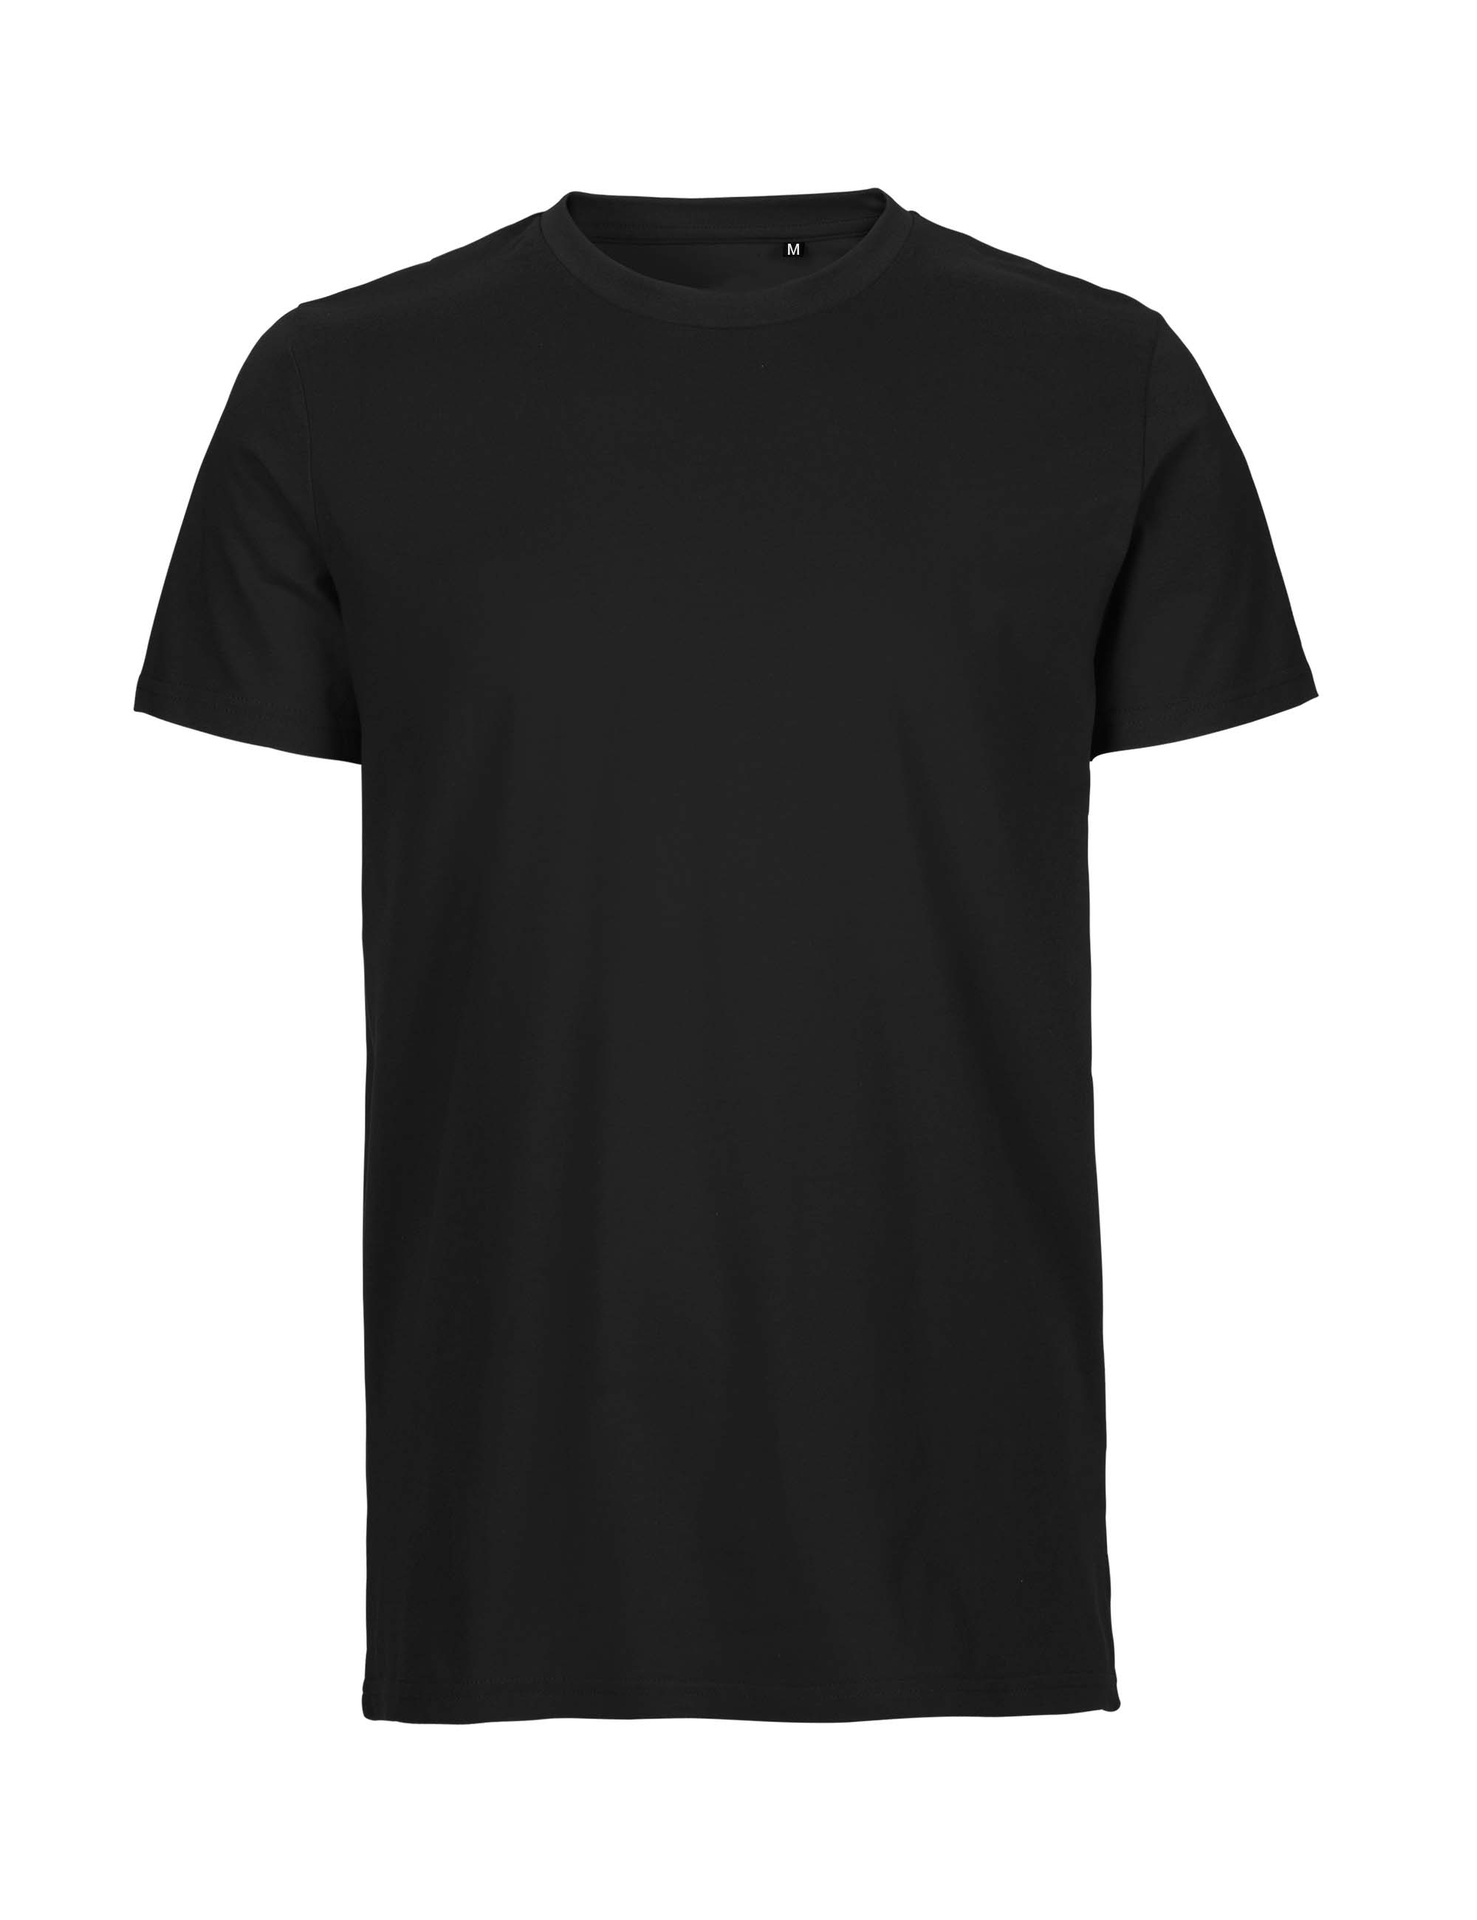 [PR/05993] Unisex Tiger Cotton T-Shirt (Black 03, M)